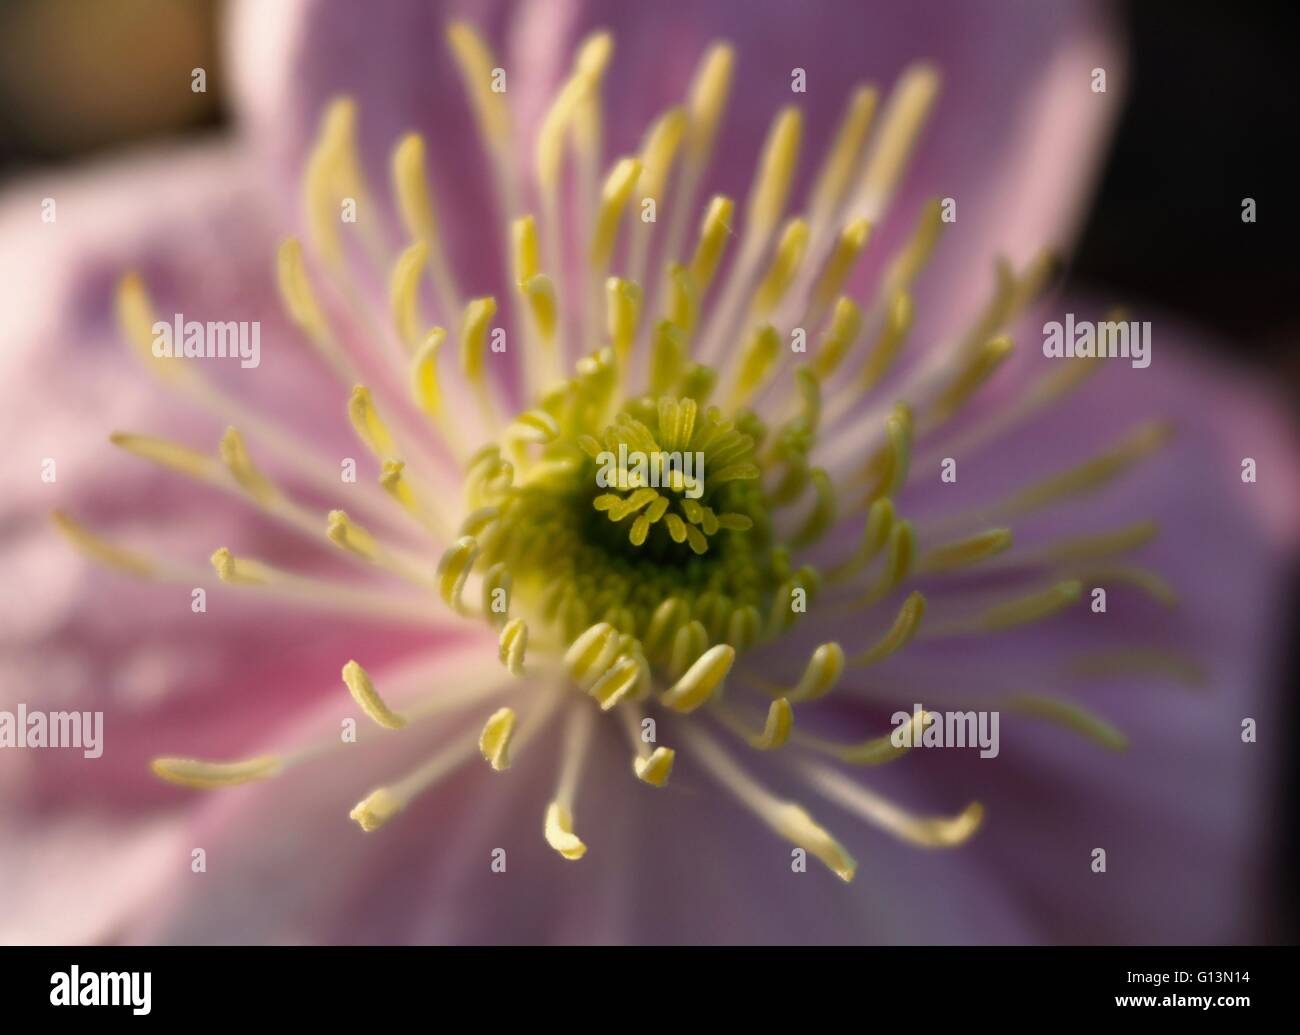 Rosa clematis centro con estambres amarillos y polen Foto de stock